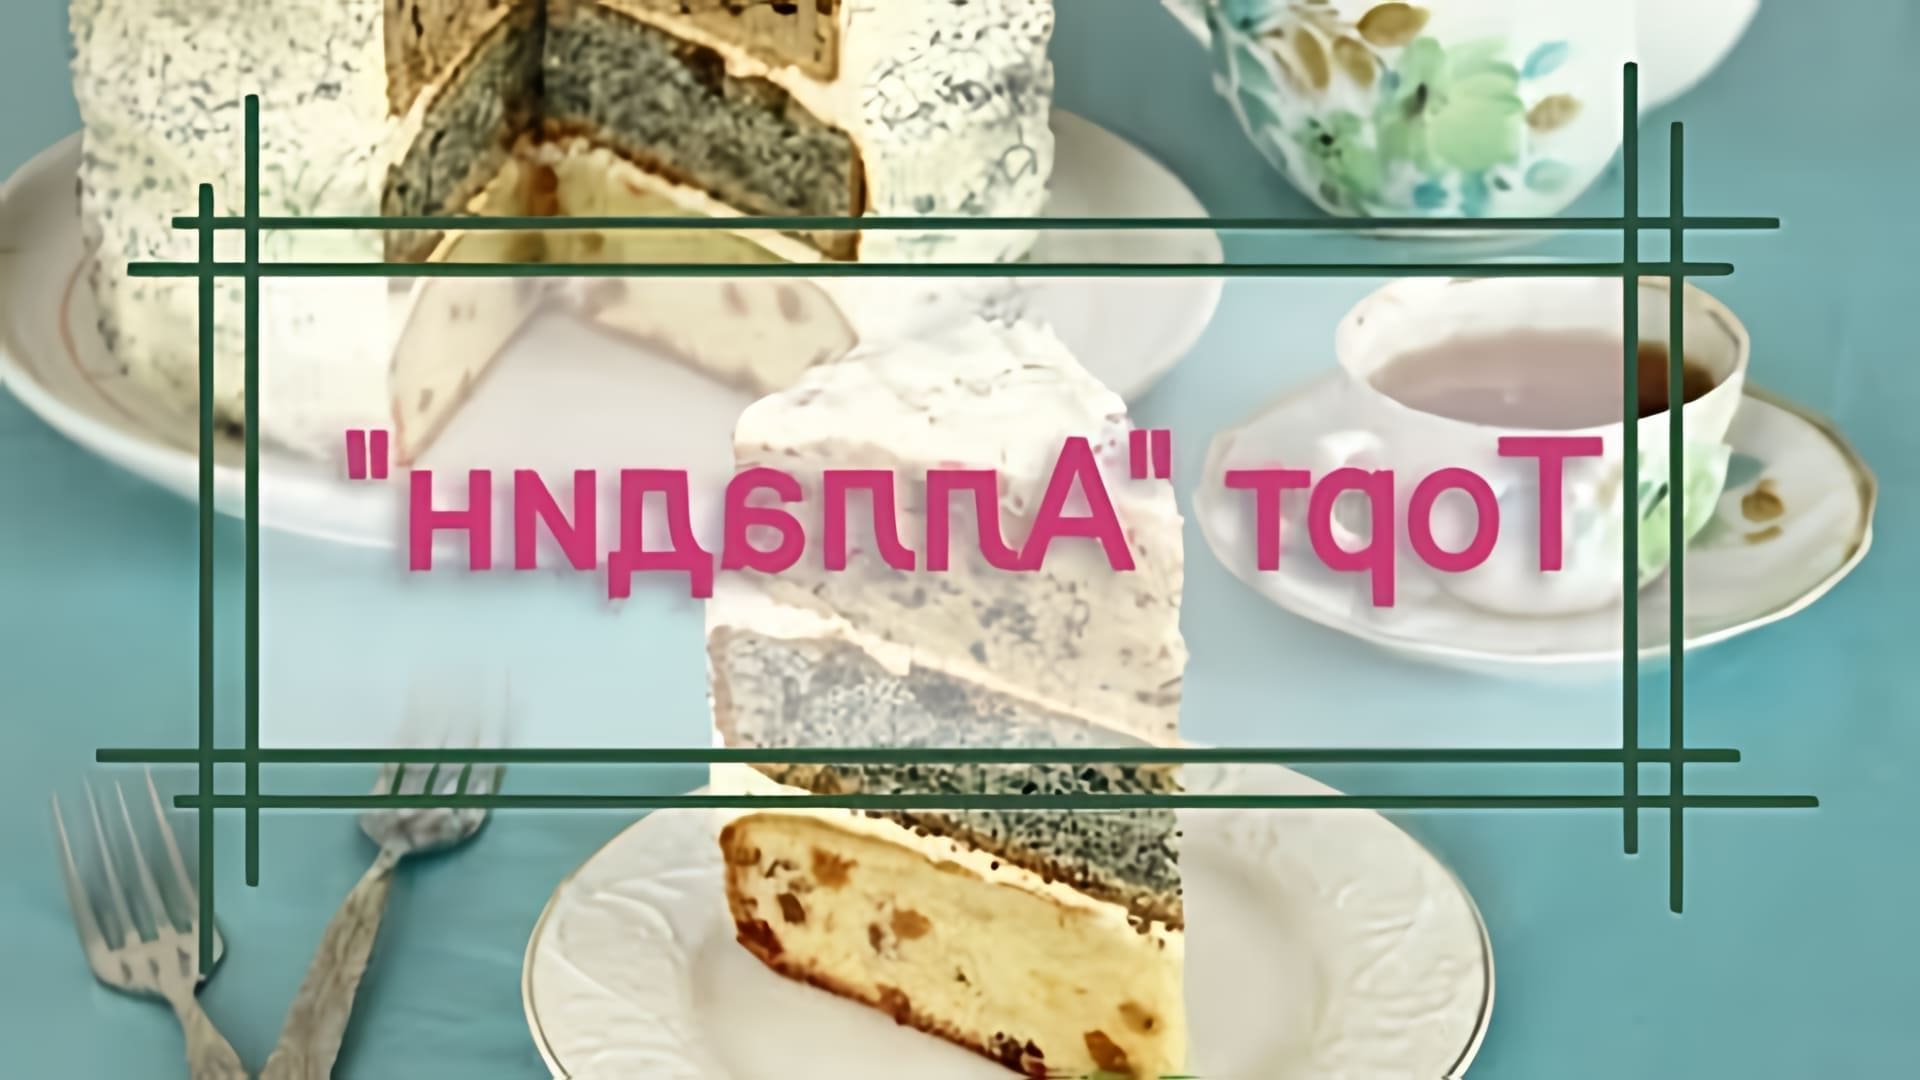 В этом видео демонстрируется рецепт торта "Алладин" с тремя разными коржами